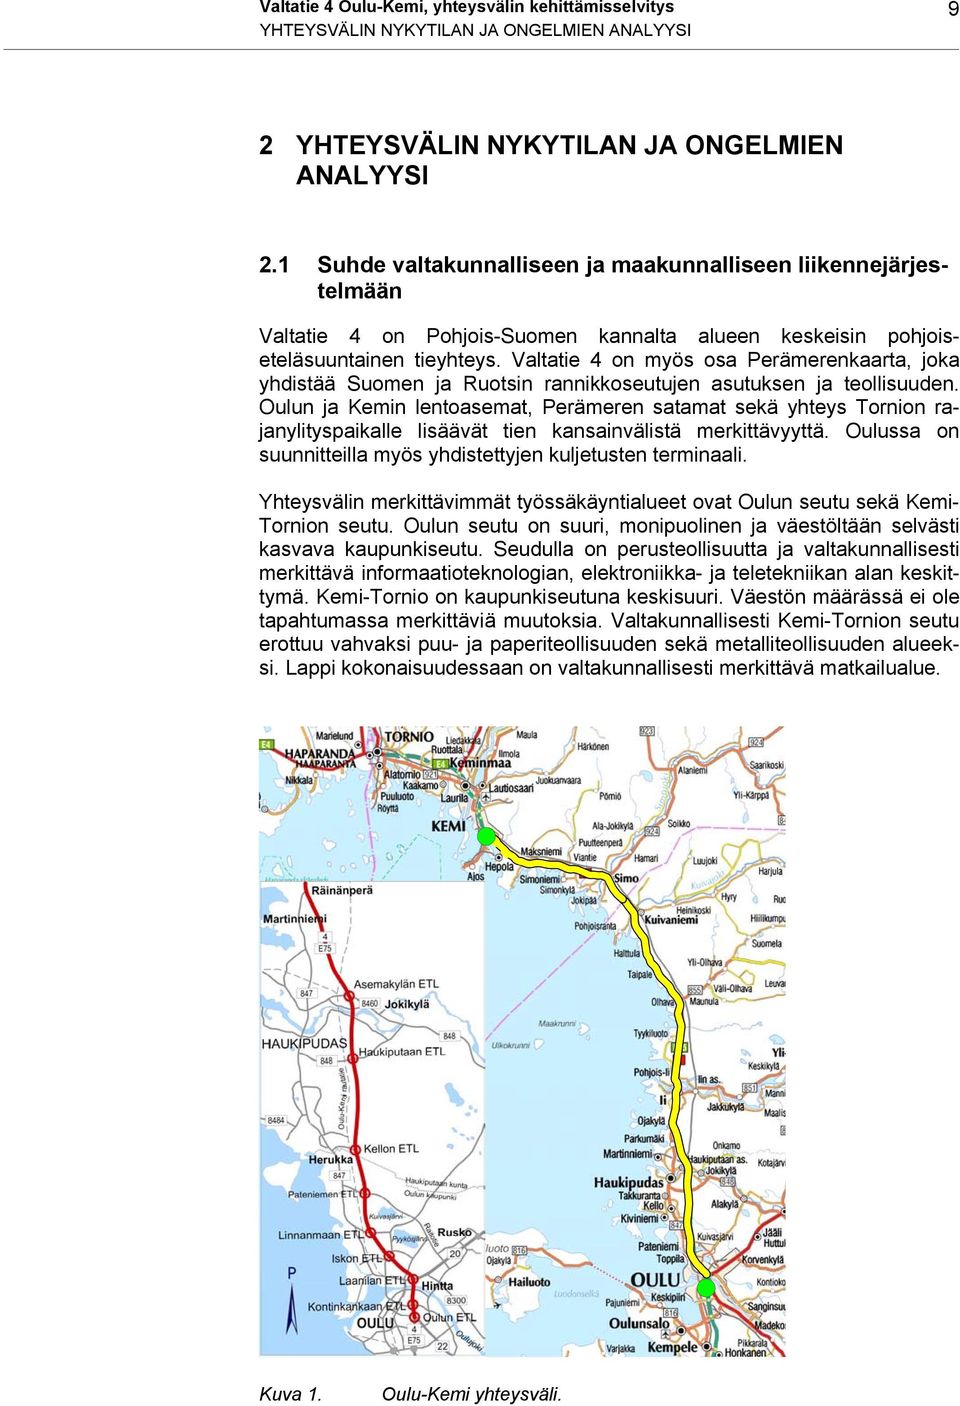 Valtatie 4 on myös osa Perämerenkaarta, joka yhdistää Suomen ja Ruotsin rannikkoseutujen asutuksen ja teollisuuden.